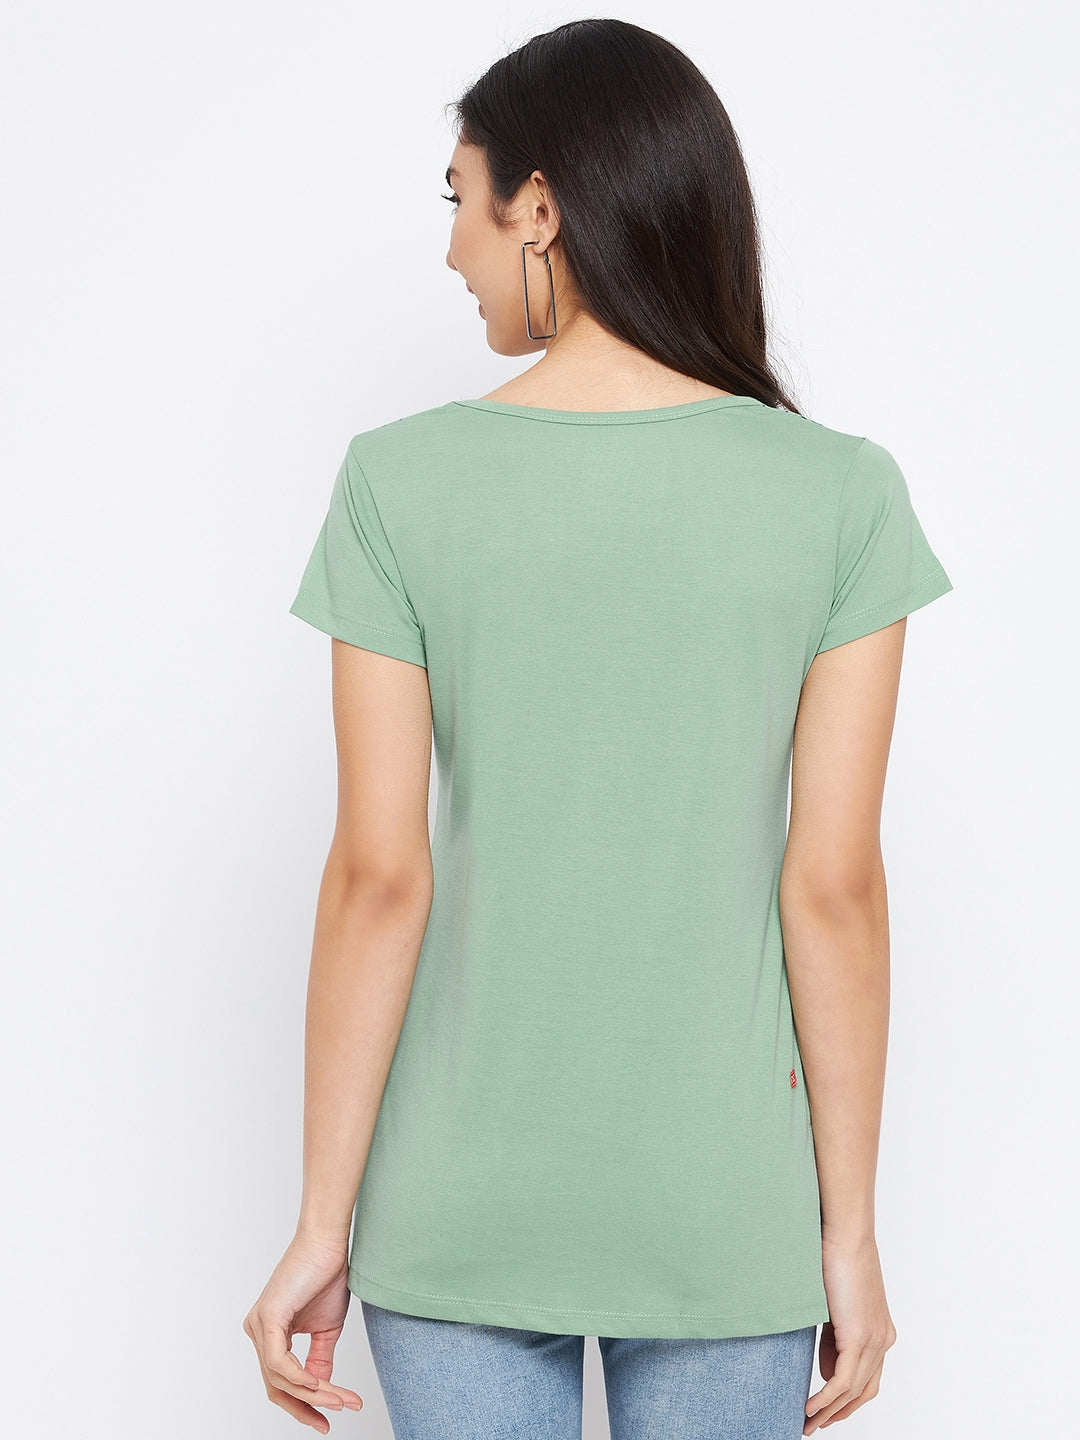 LivFree Round Neck Women's T-Shirt & Top in Printed Pattern Half Sleeve- Pista